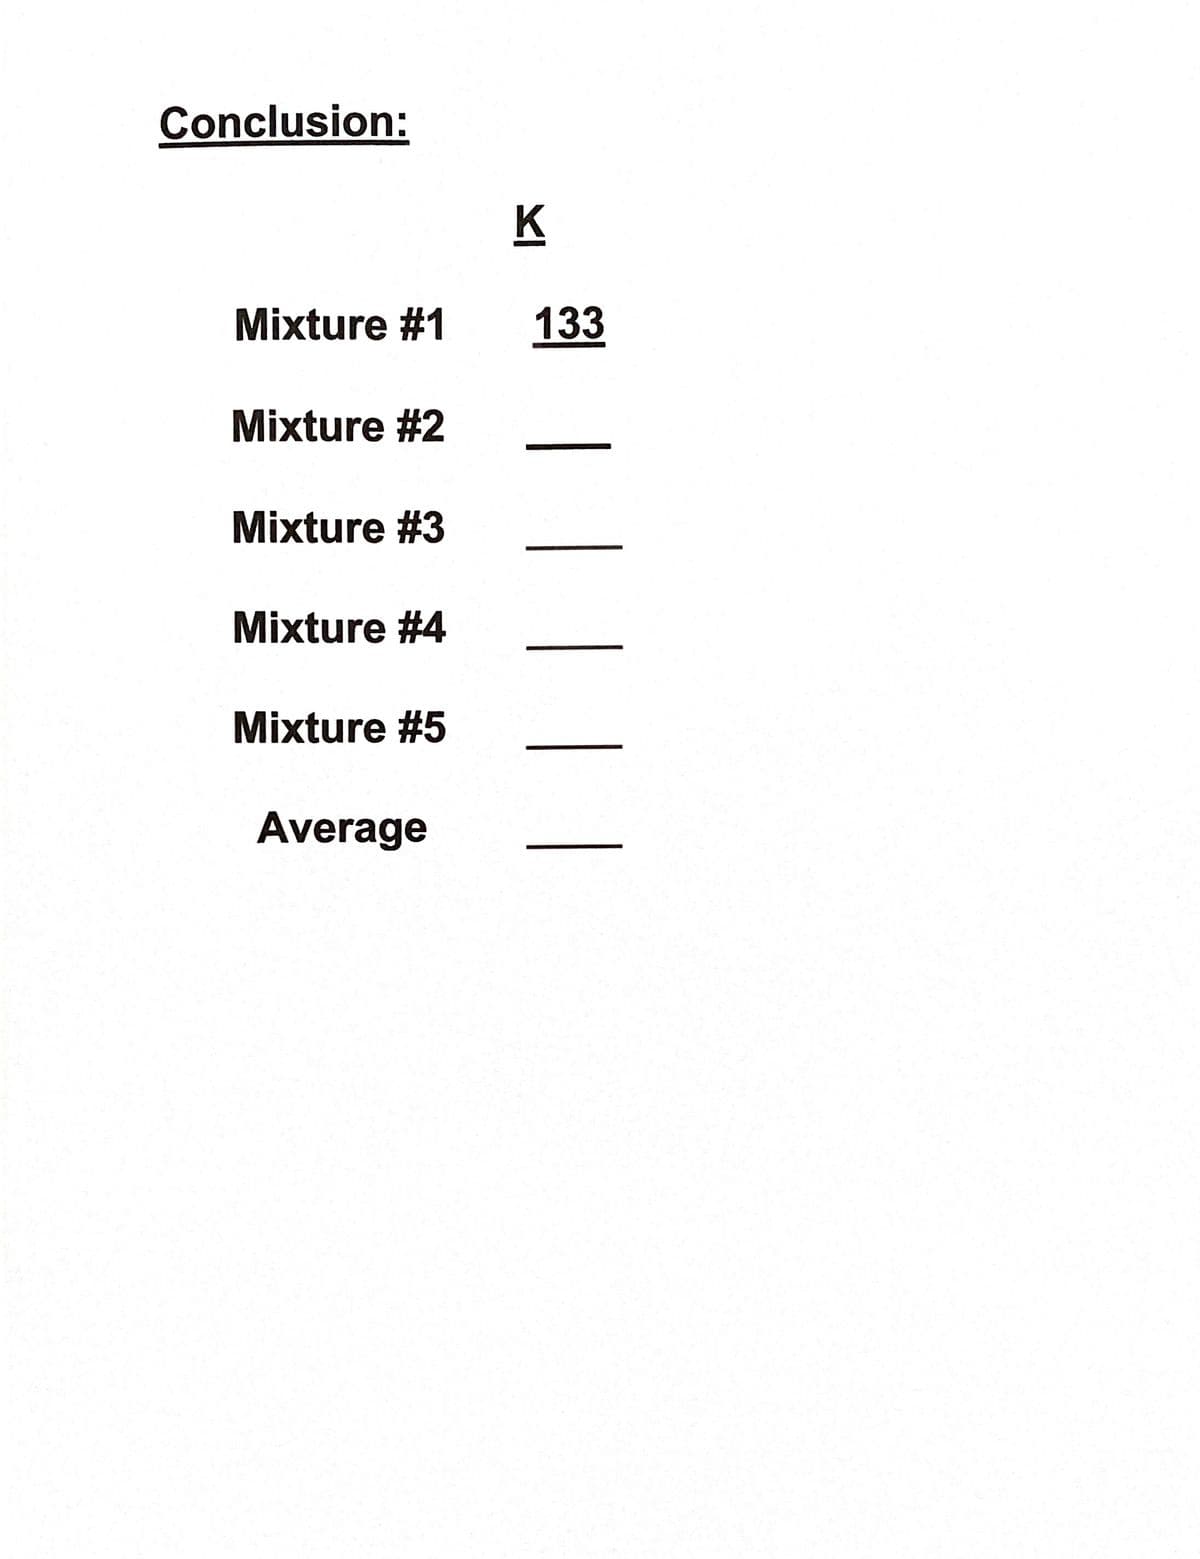 Conclusion:
K
Mixture #1
133
Mixture #2
Mixture #3
Mixture #4
Mixture #5
Average
|
|||
